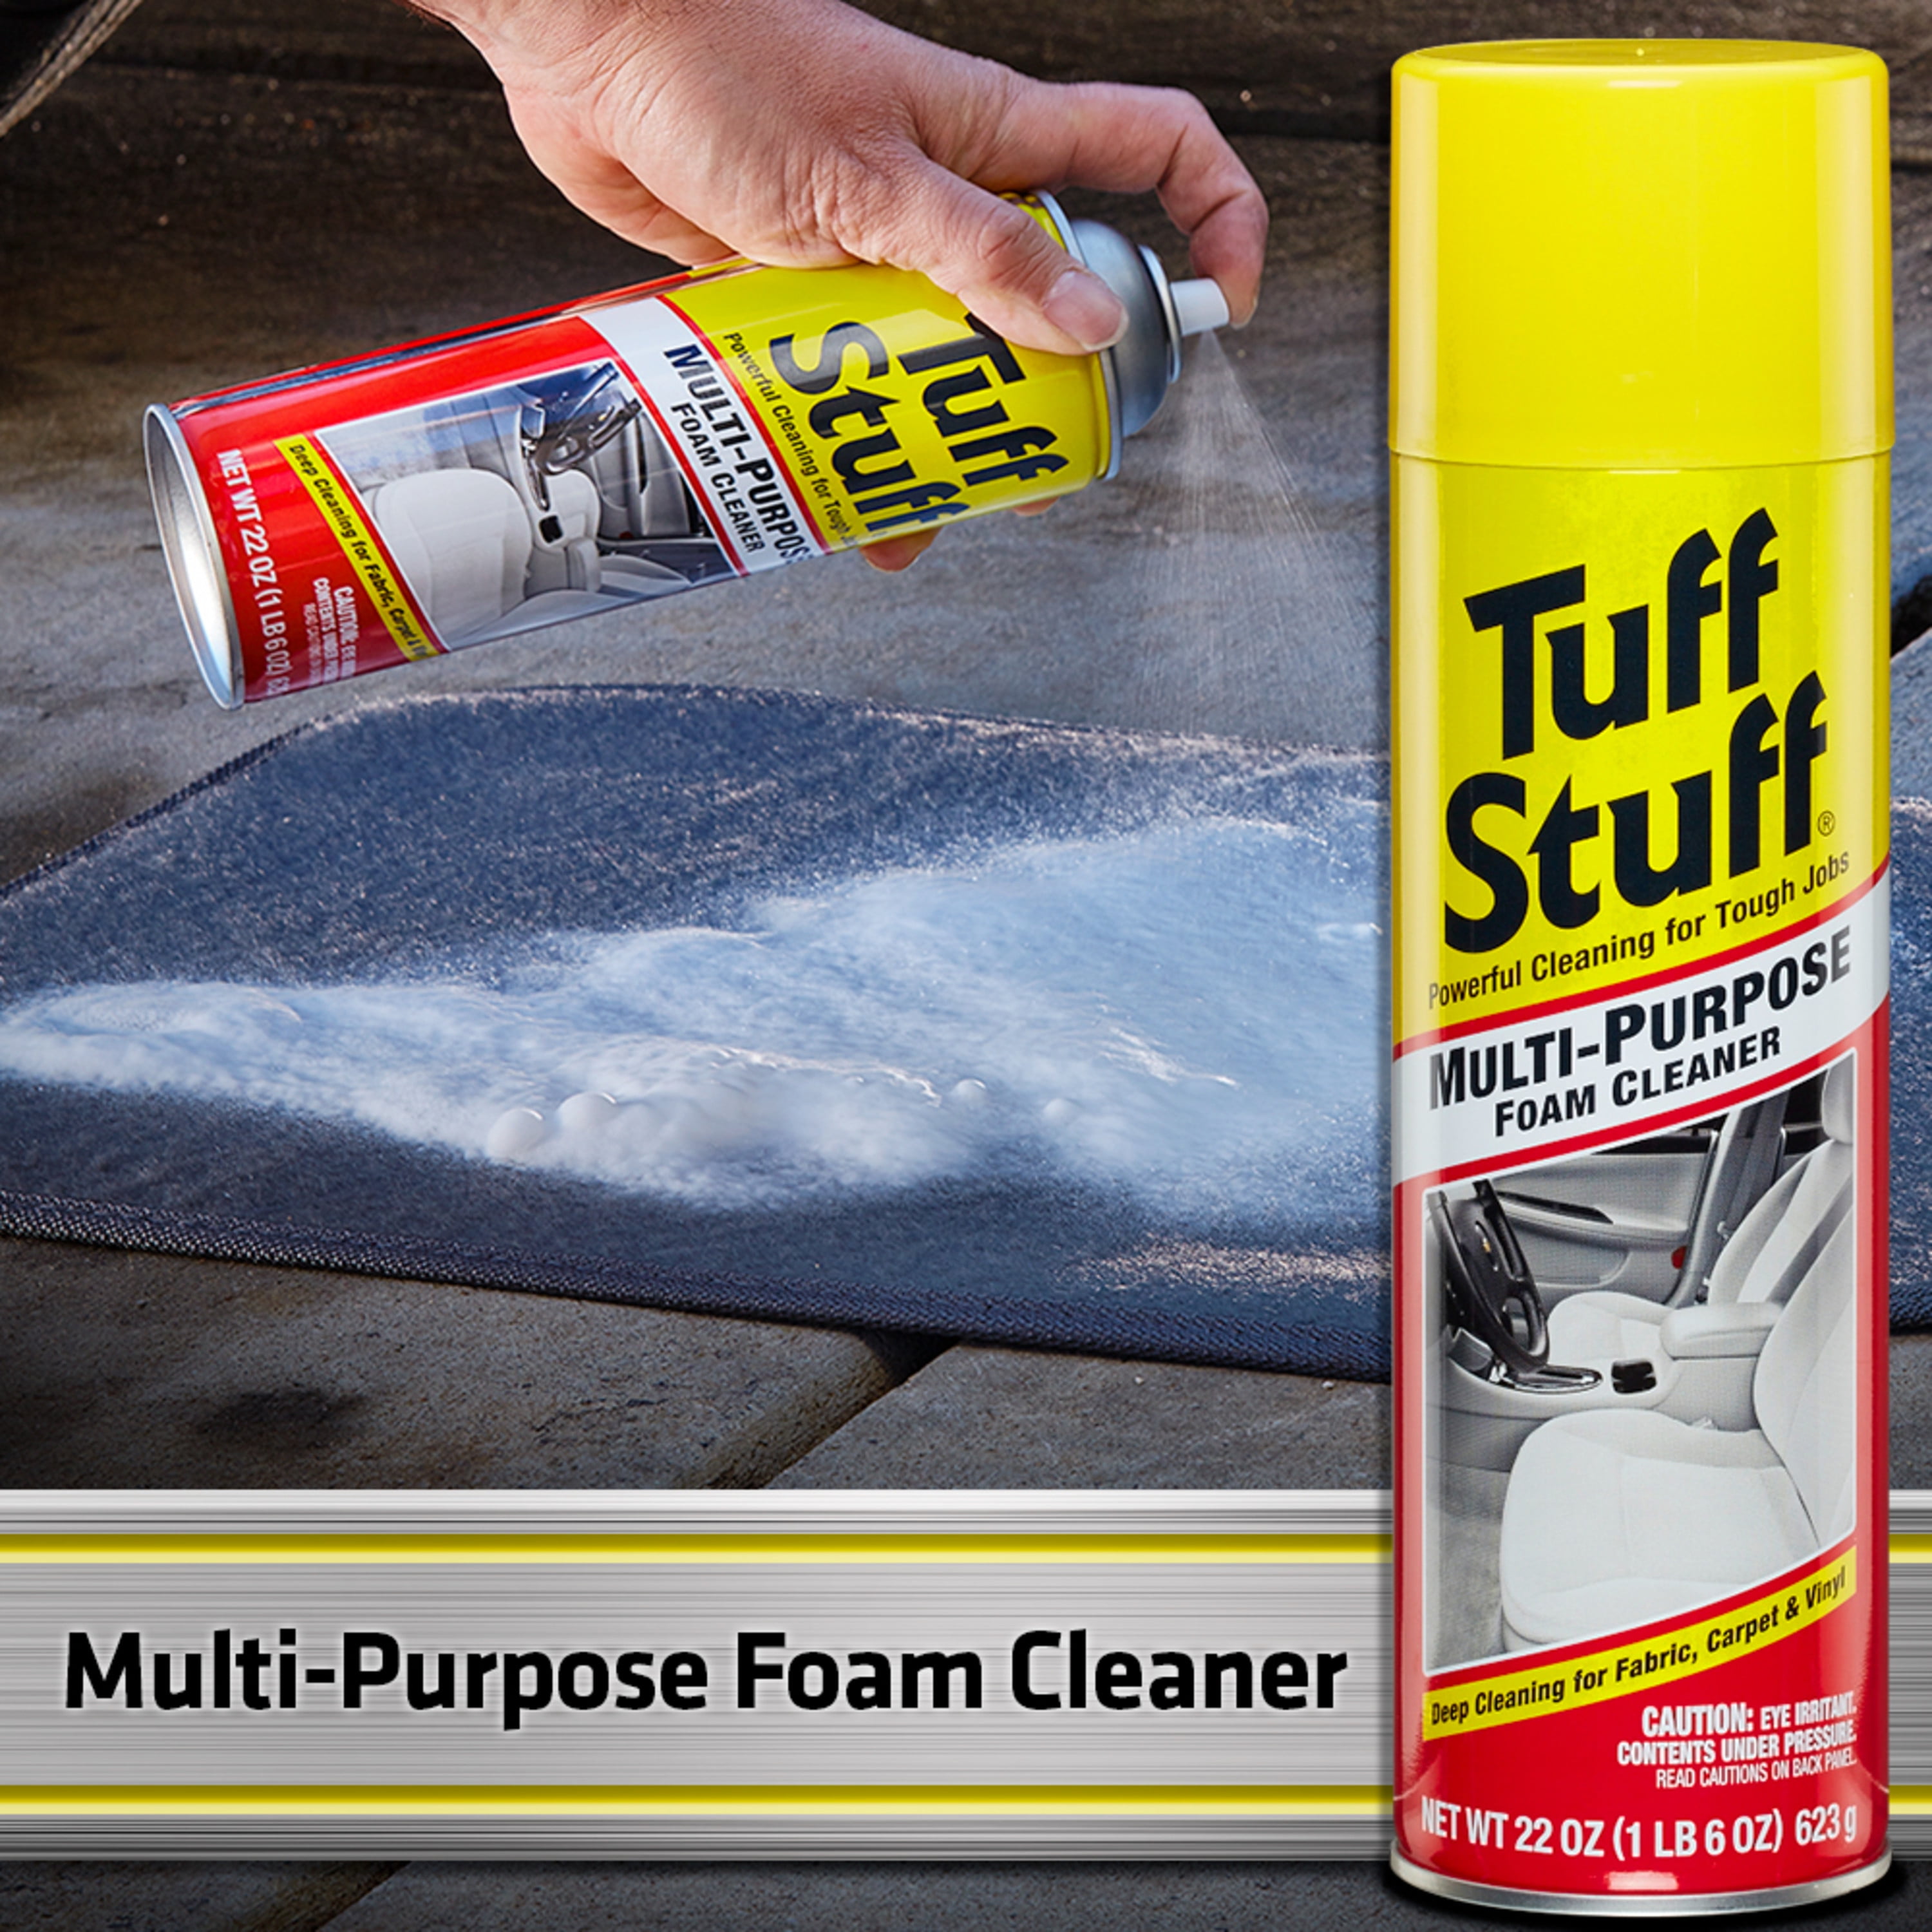 Stain Remover & Multi-Purpose Cleaner - Tuff Stuff